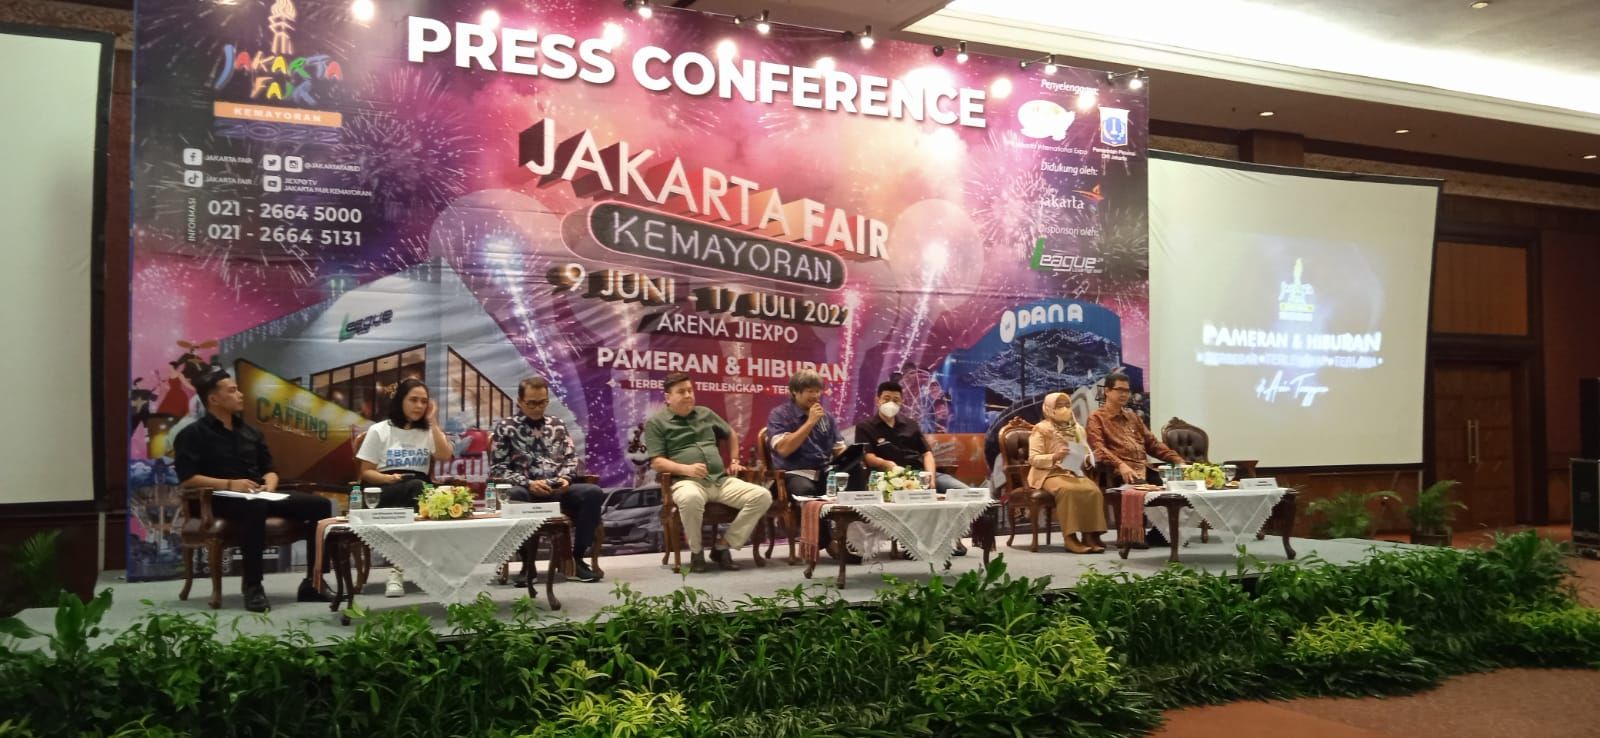  Layanan dompet digital terdepan di Indonesia, DANA, kembali dipercaya untuk menjadi mitra resmi pembayaran nontunai di perhelatan Jakarta Fair Kemayoran (JFK) 2022 yang diselenggarakan mulai 9 Juni - 17 Juli mendatang.